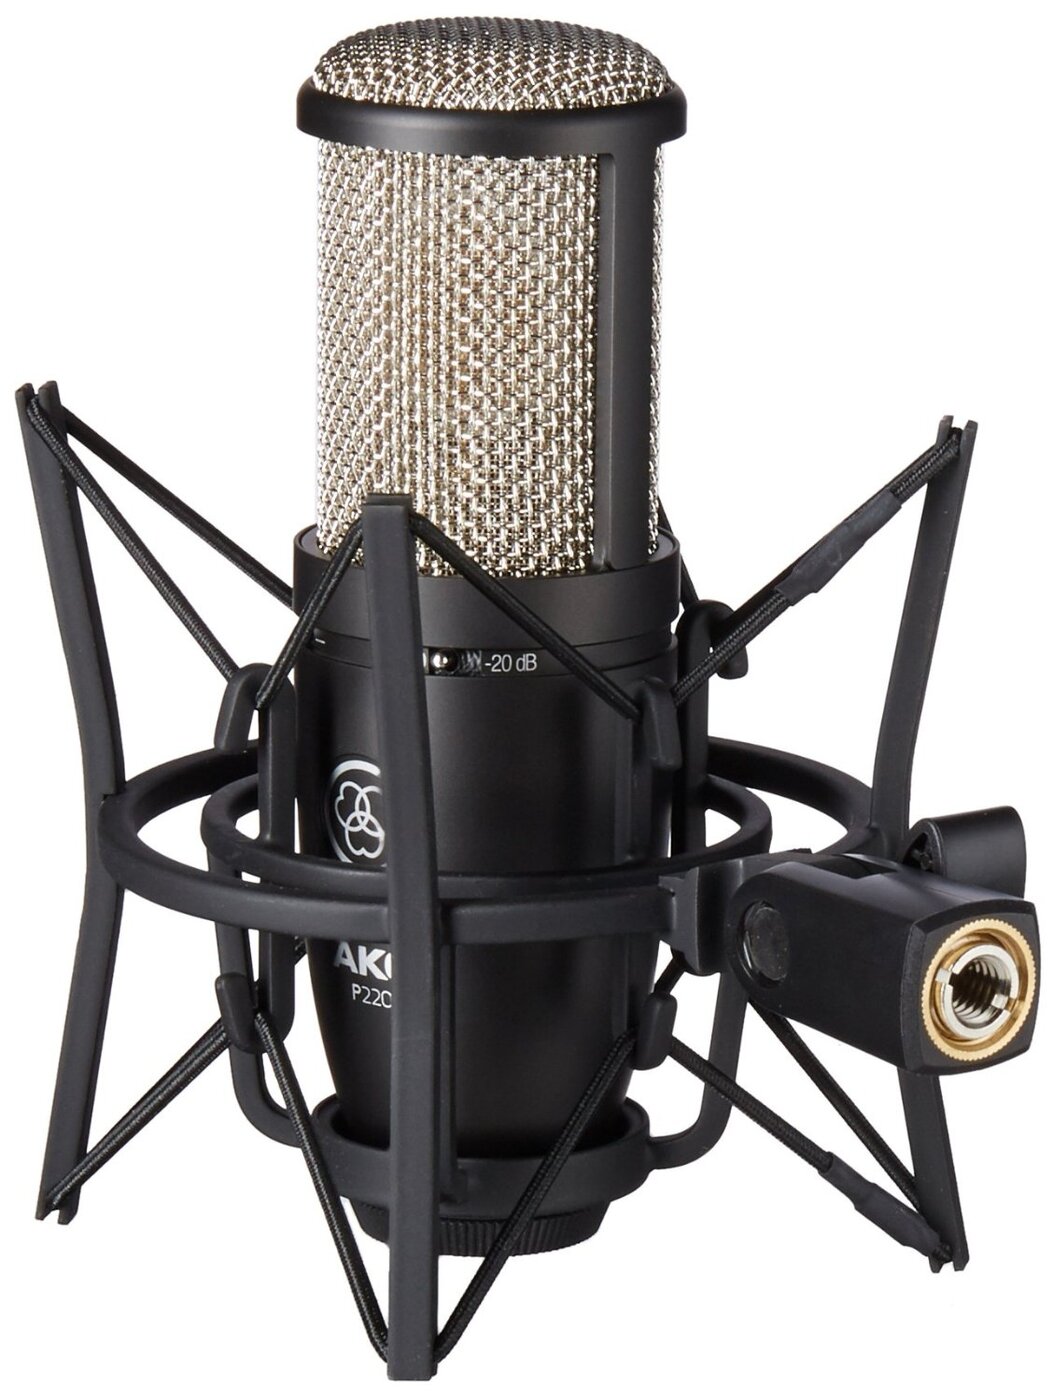 AKG P220 вокальный конденсаторный микрофон